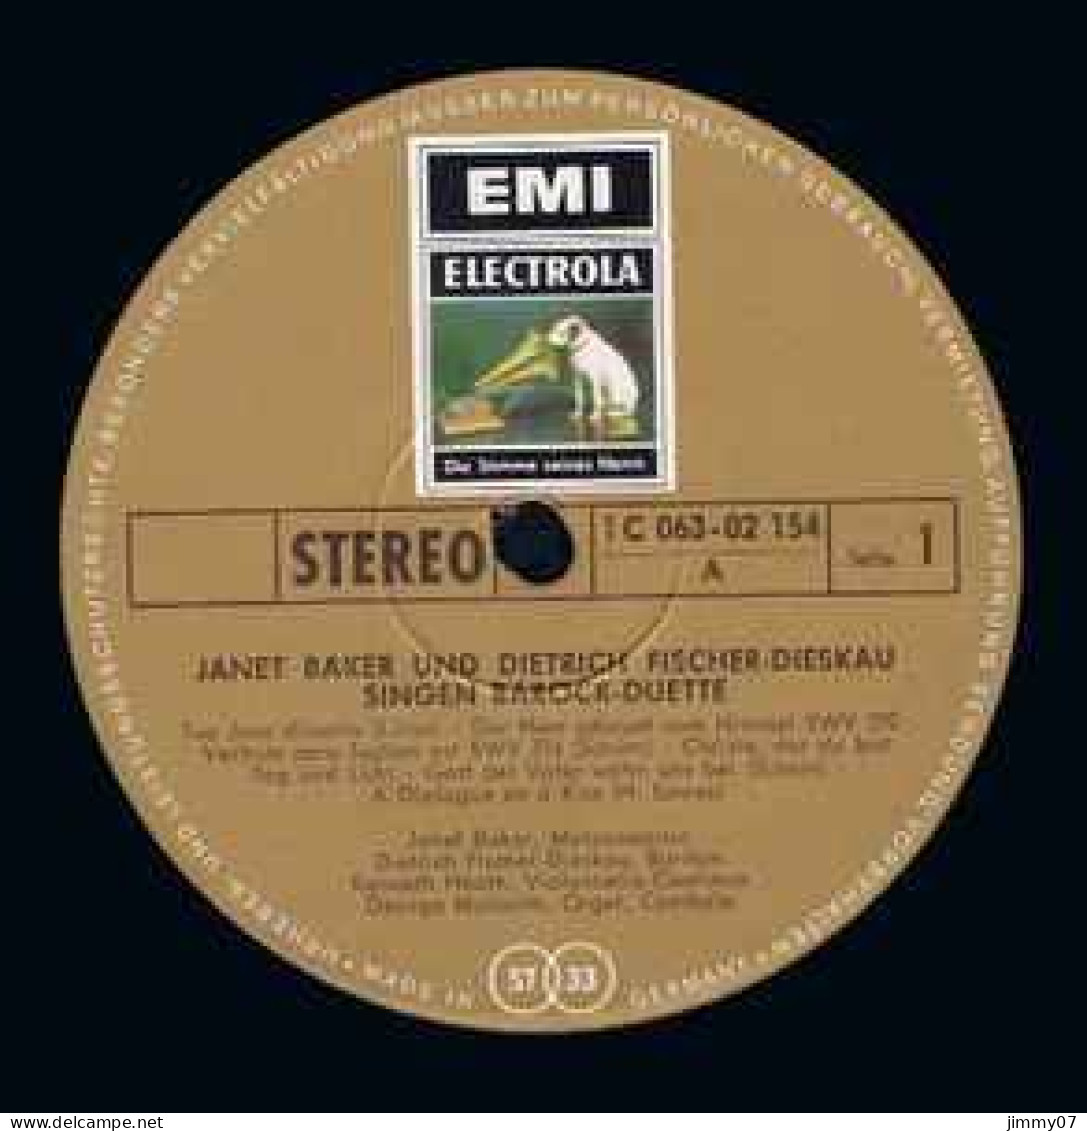 Janet Baker Und Dietrich Fischer-Dieskau - Singen Barockduette Live-Mitschnitt Aus Der Royal Festival Hall In London(LP) - Klassiekers